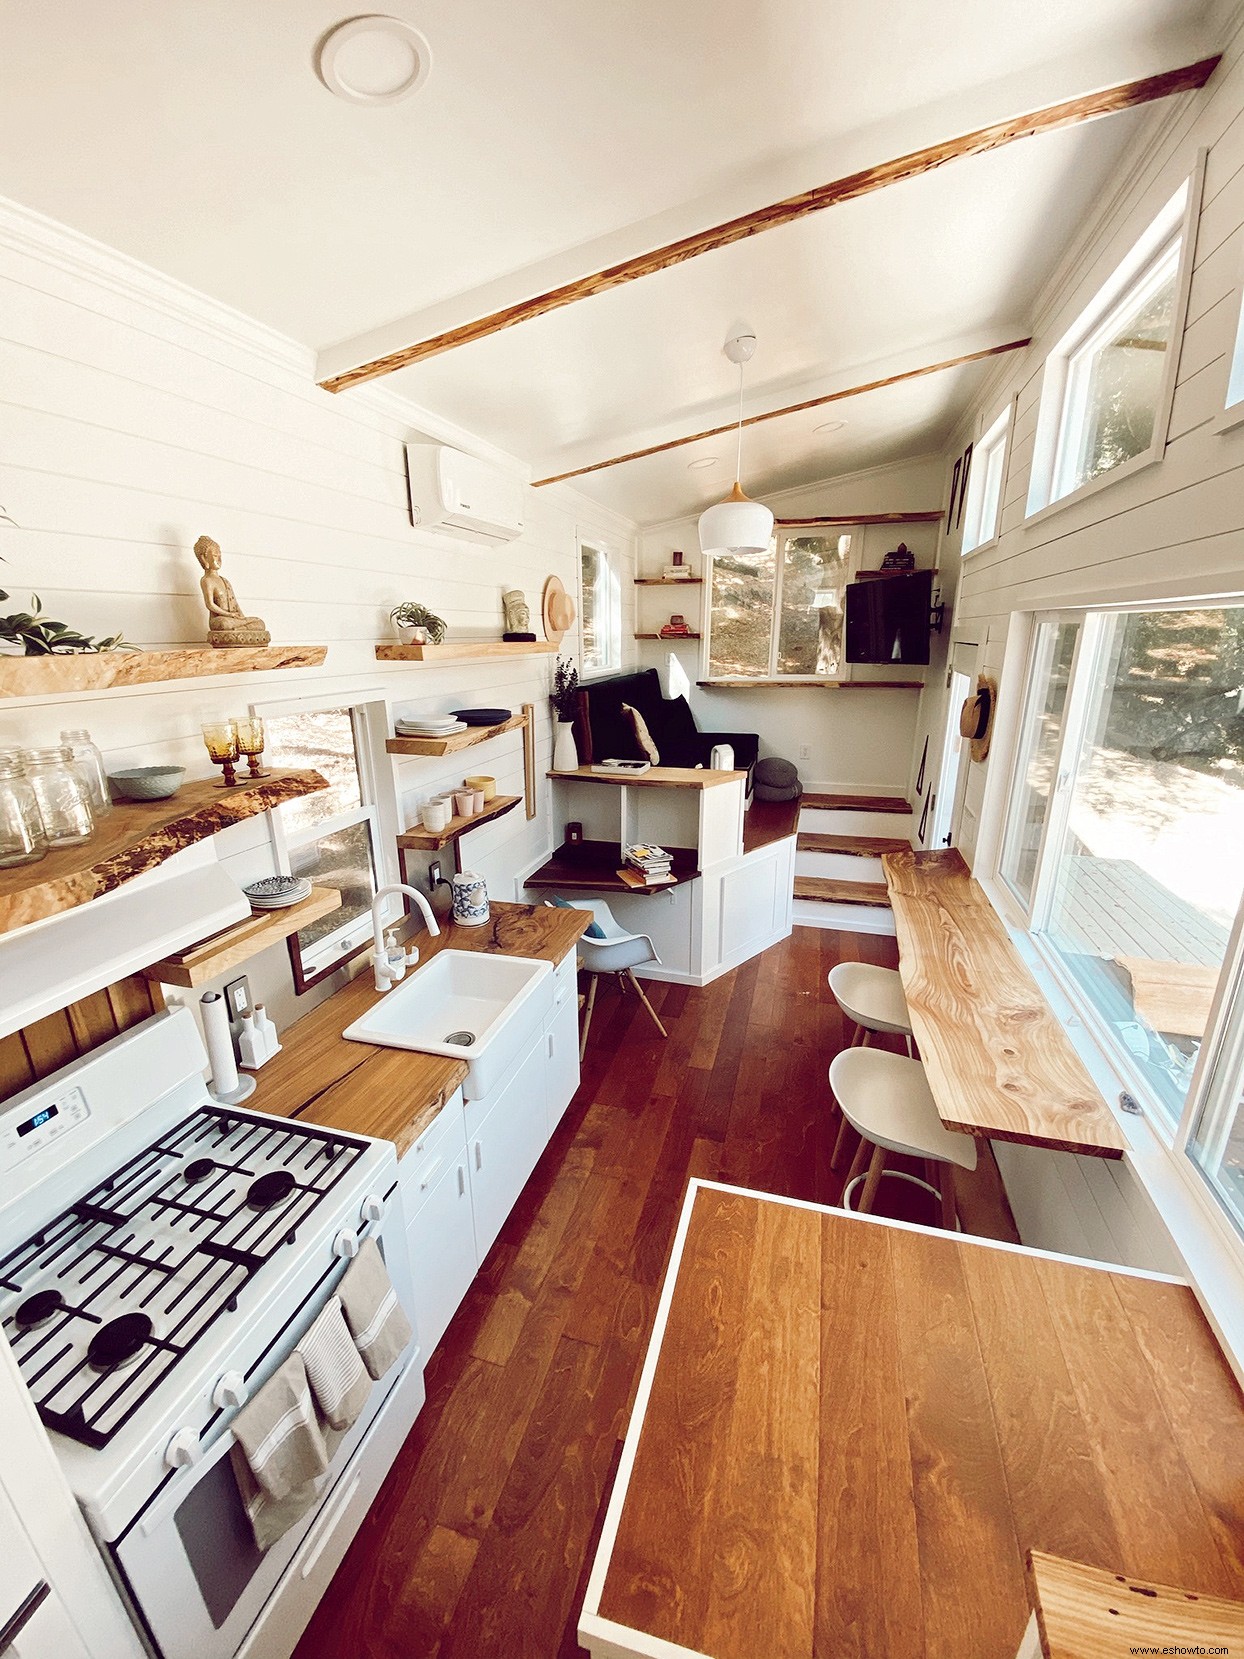 Las vistas al bosque y el almacenamiento inteligente facilitan la vida en esta pequeña casa moderna 